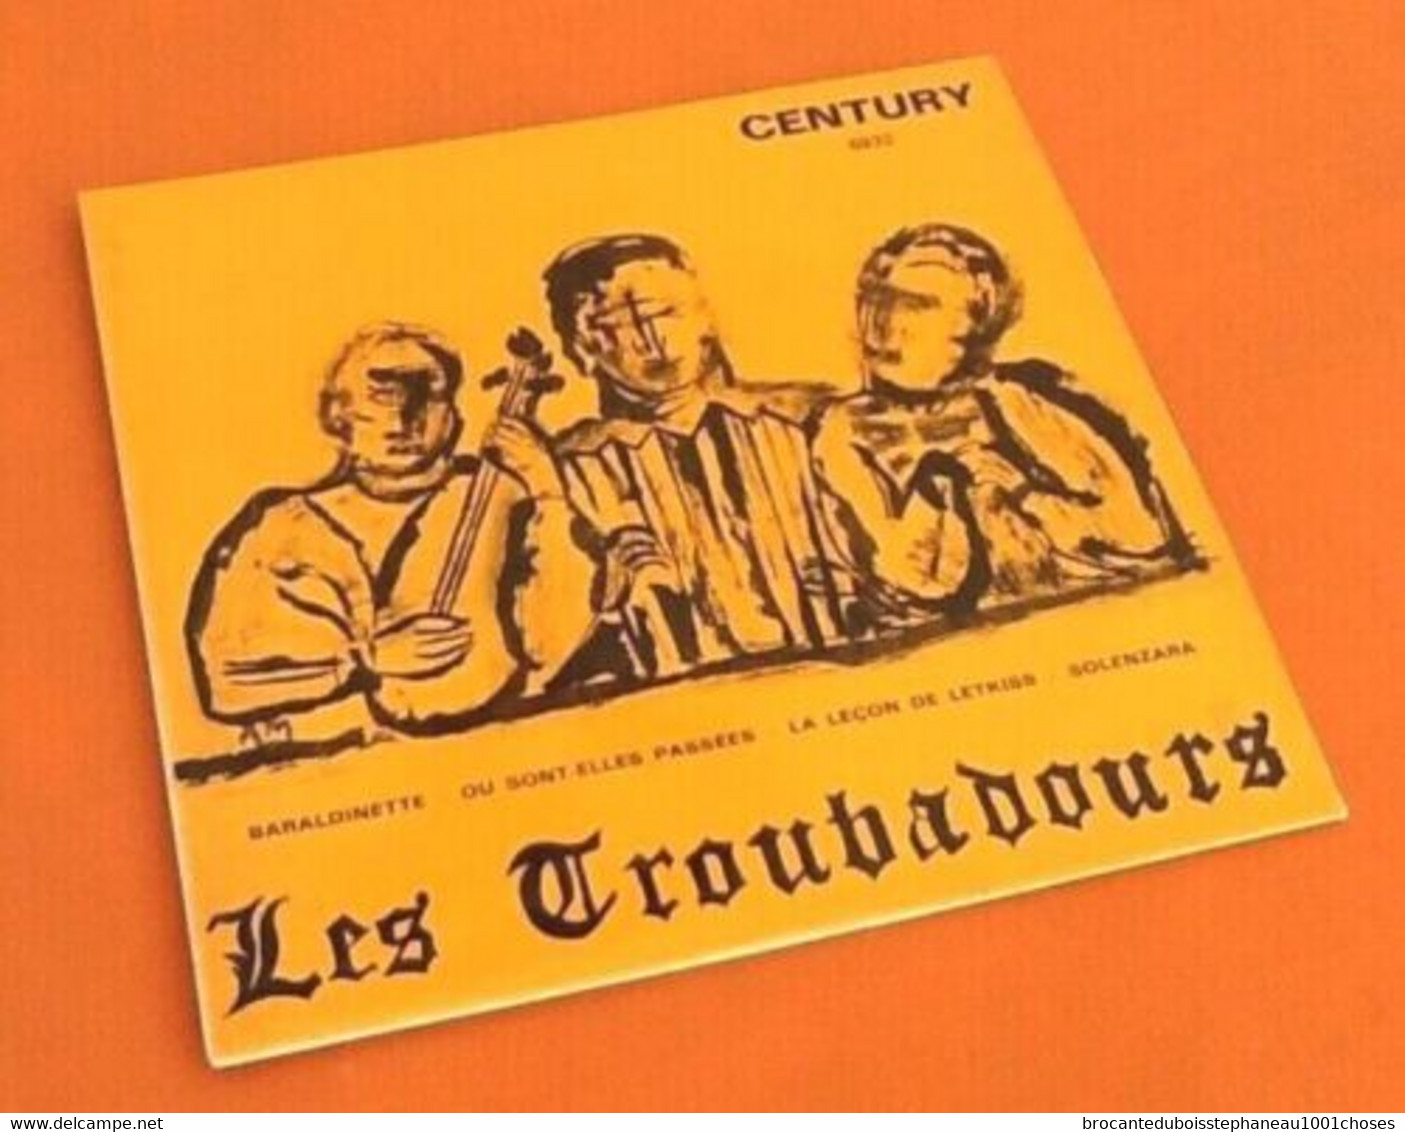 Vinyle 45 Tours  Les Troubadours  Baraldinette  Century 6932 - Country & Folk